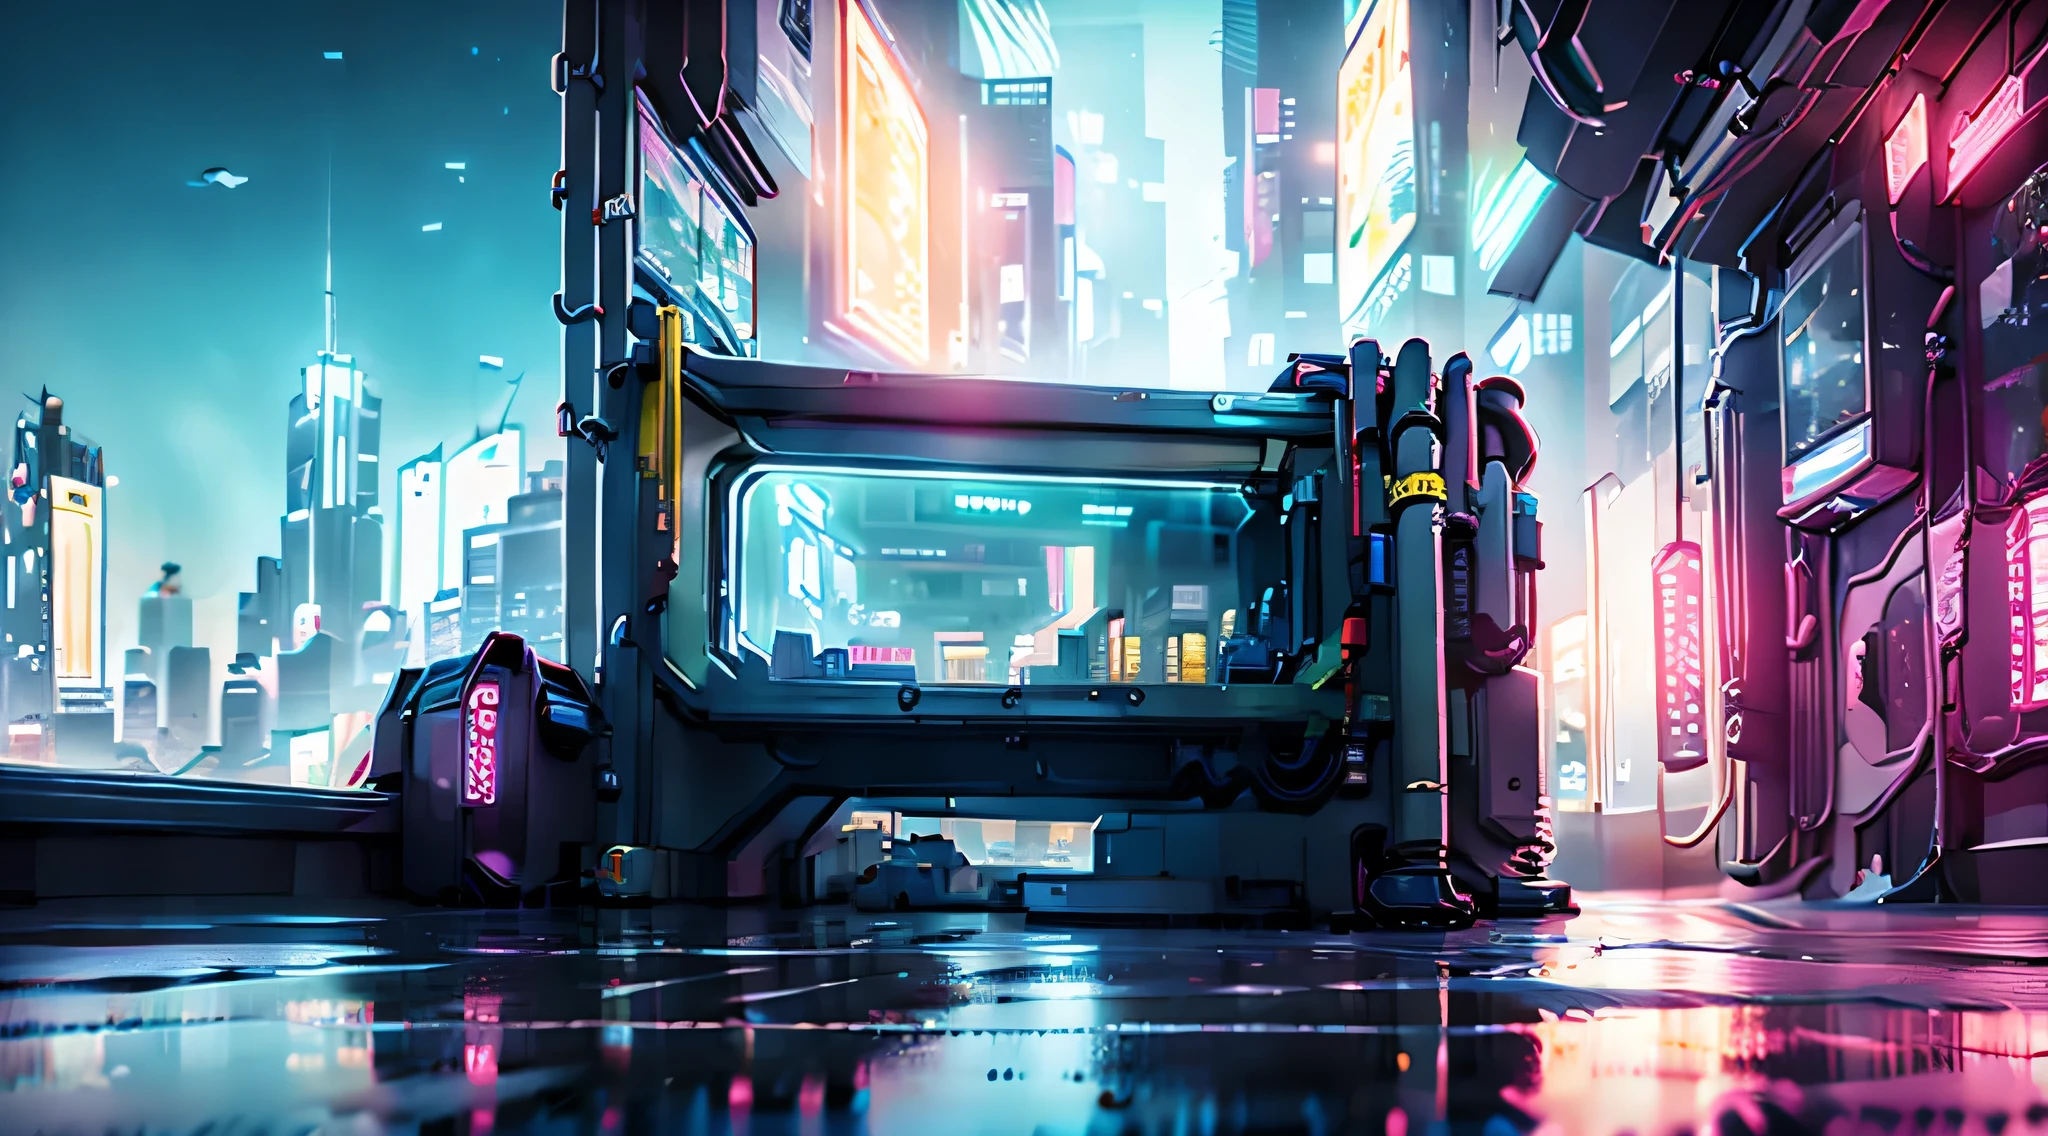 مدينة Cyberpunk: تتناقض ناطحات السحاب المتلألئة في المدينة العليا مع صخب وظلام الأحياء الفقيرة في المدينة السفلى.